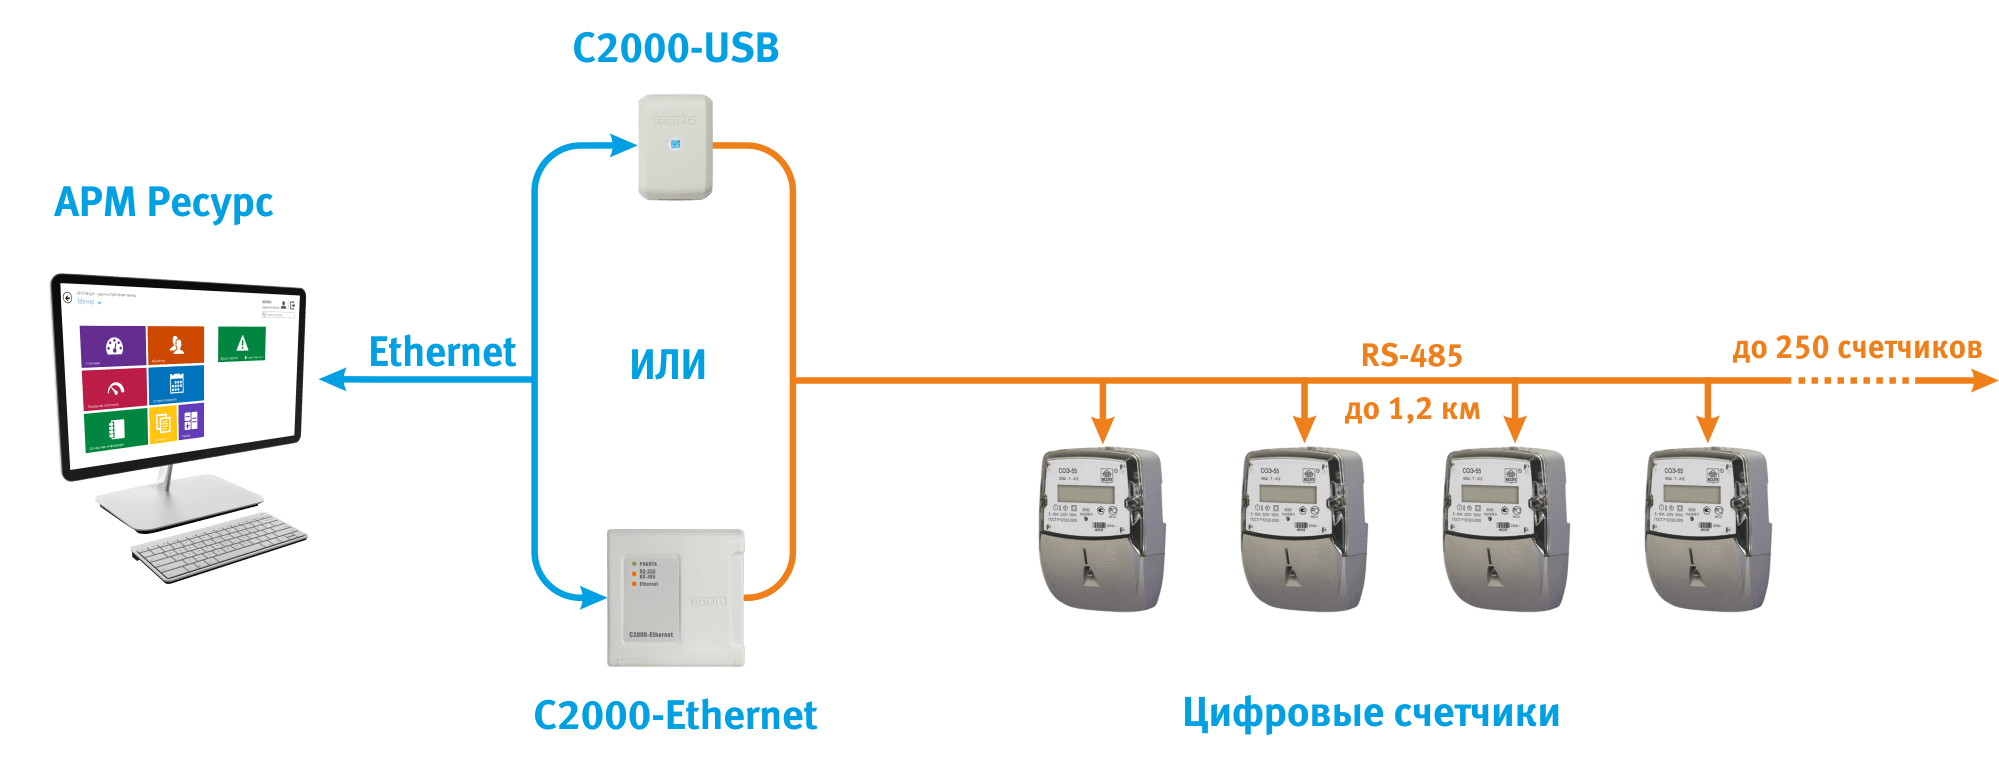 Подключение арма. Схема соединения счетчиков по RS-485. Схема подключения по RS-485 счетчик электроэнергии. Интерфейс RS-485 В счетчиках электроэнергии. Счетчик Меркурий с интерфейсом RS-485.